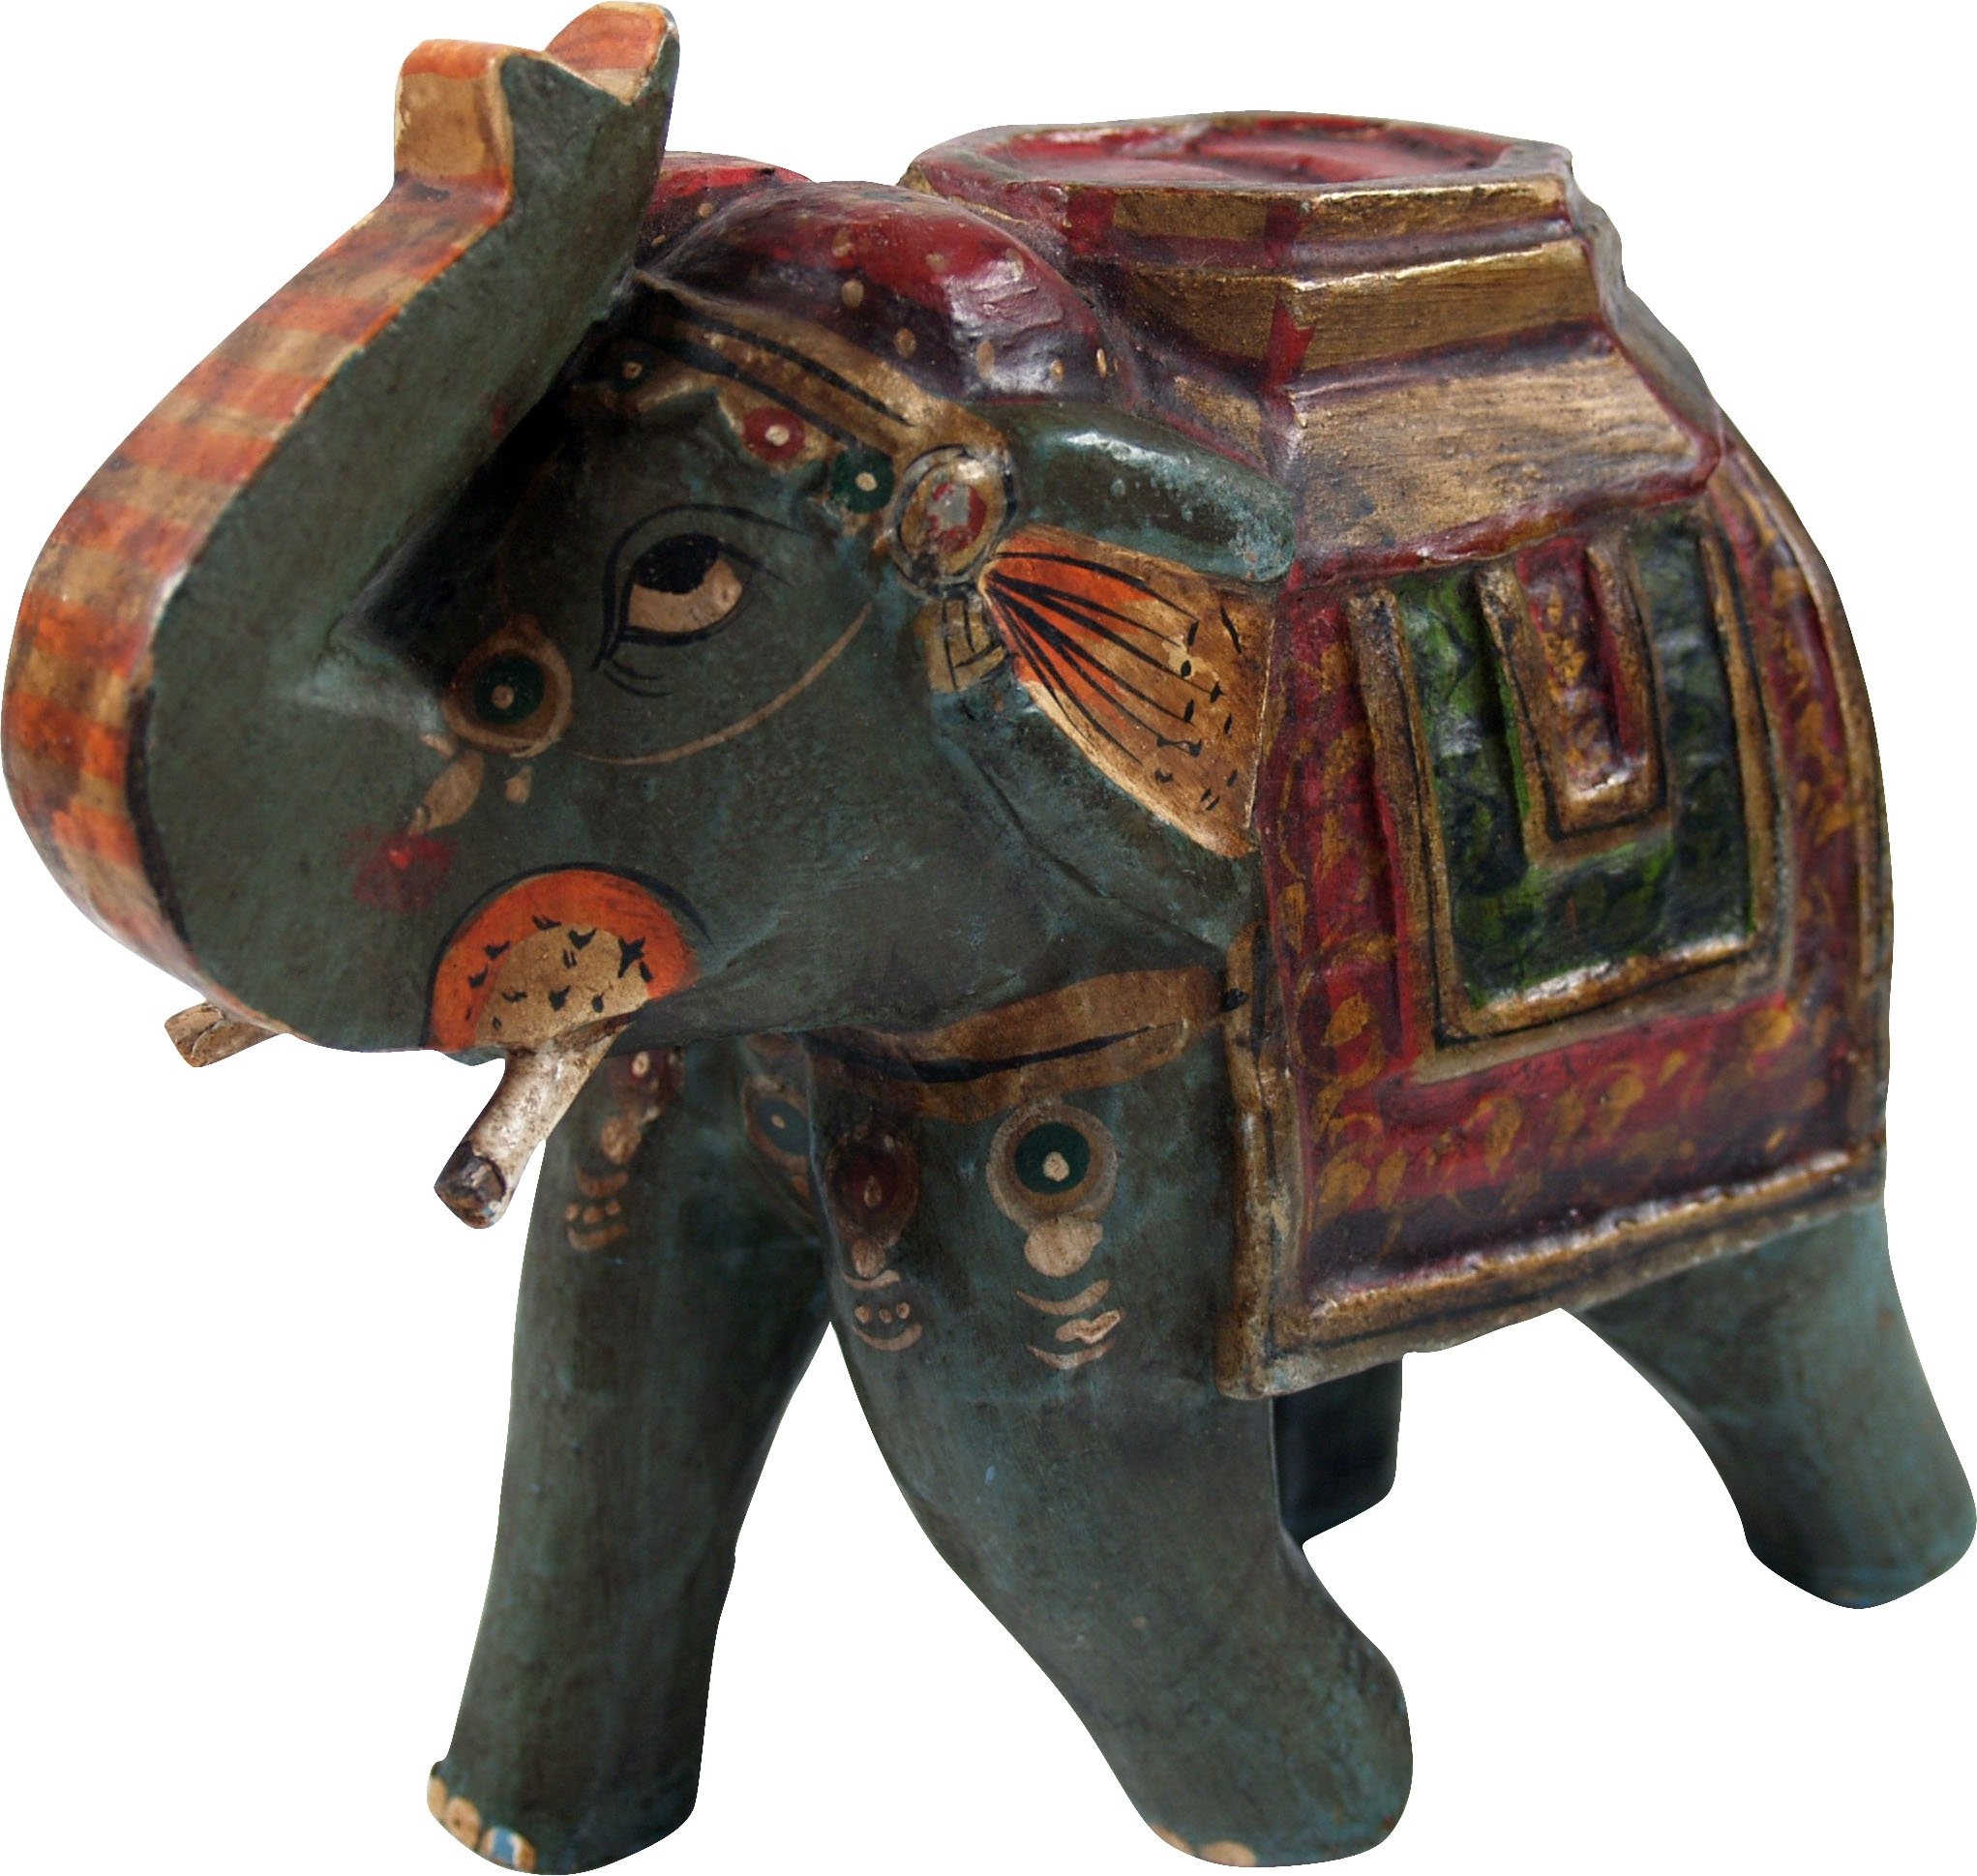 GURU SHOP Deko Elefant aus Indien, Bemalter Indischer Holzelefant, Skulptur Elefant, Mint, Farbe: Mint, 15x18x8 cm, Tierfiguren